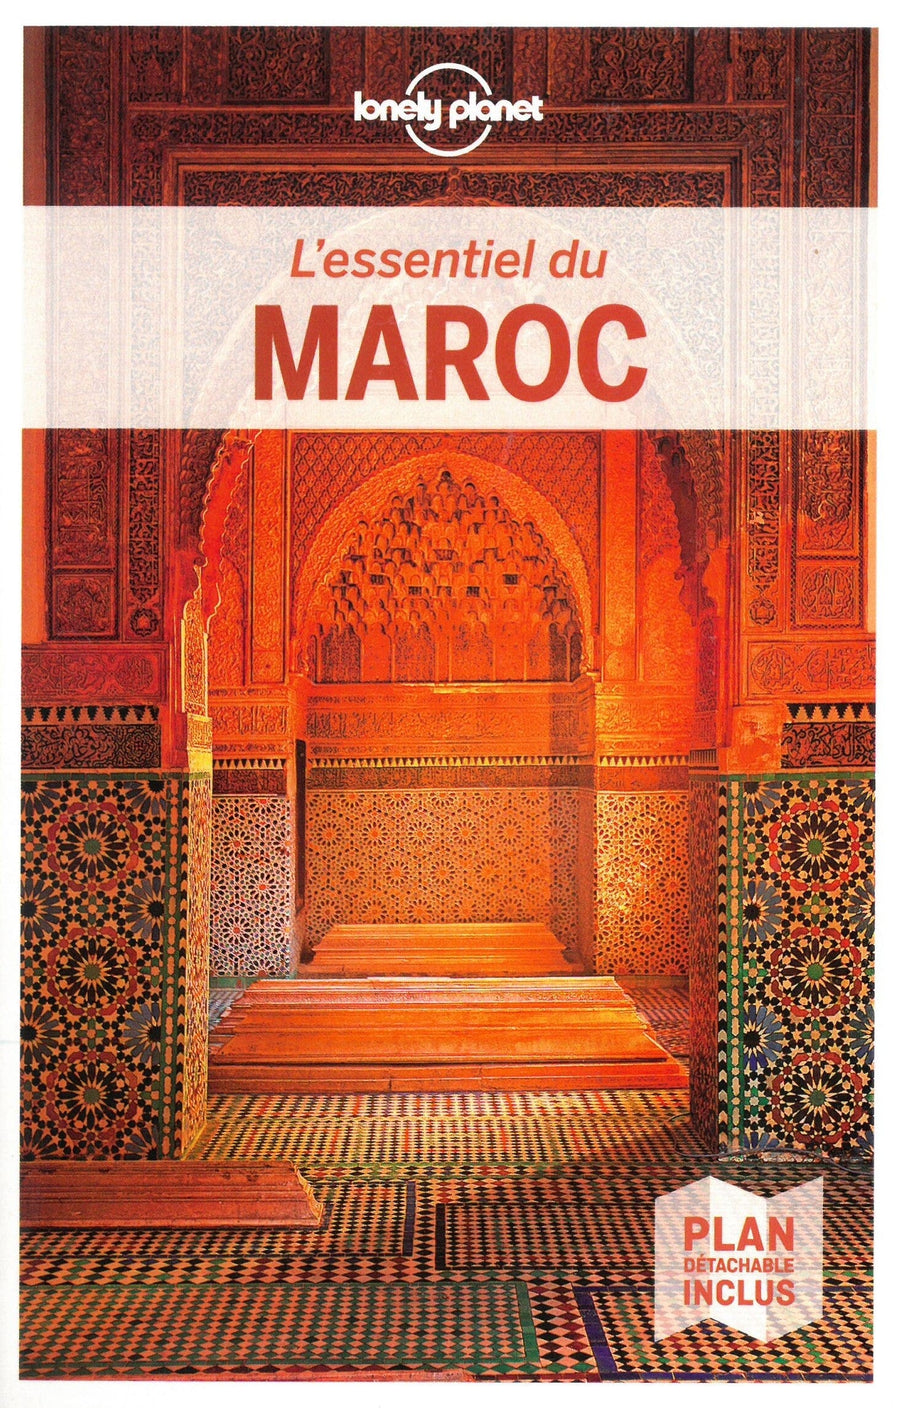 Guide de voyage - L'essentiel du Maroc | Lonely Planet guide de voyage Lonely Planet 